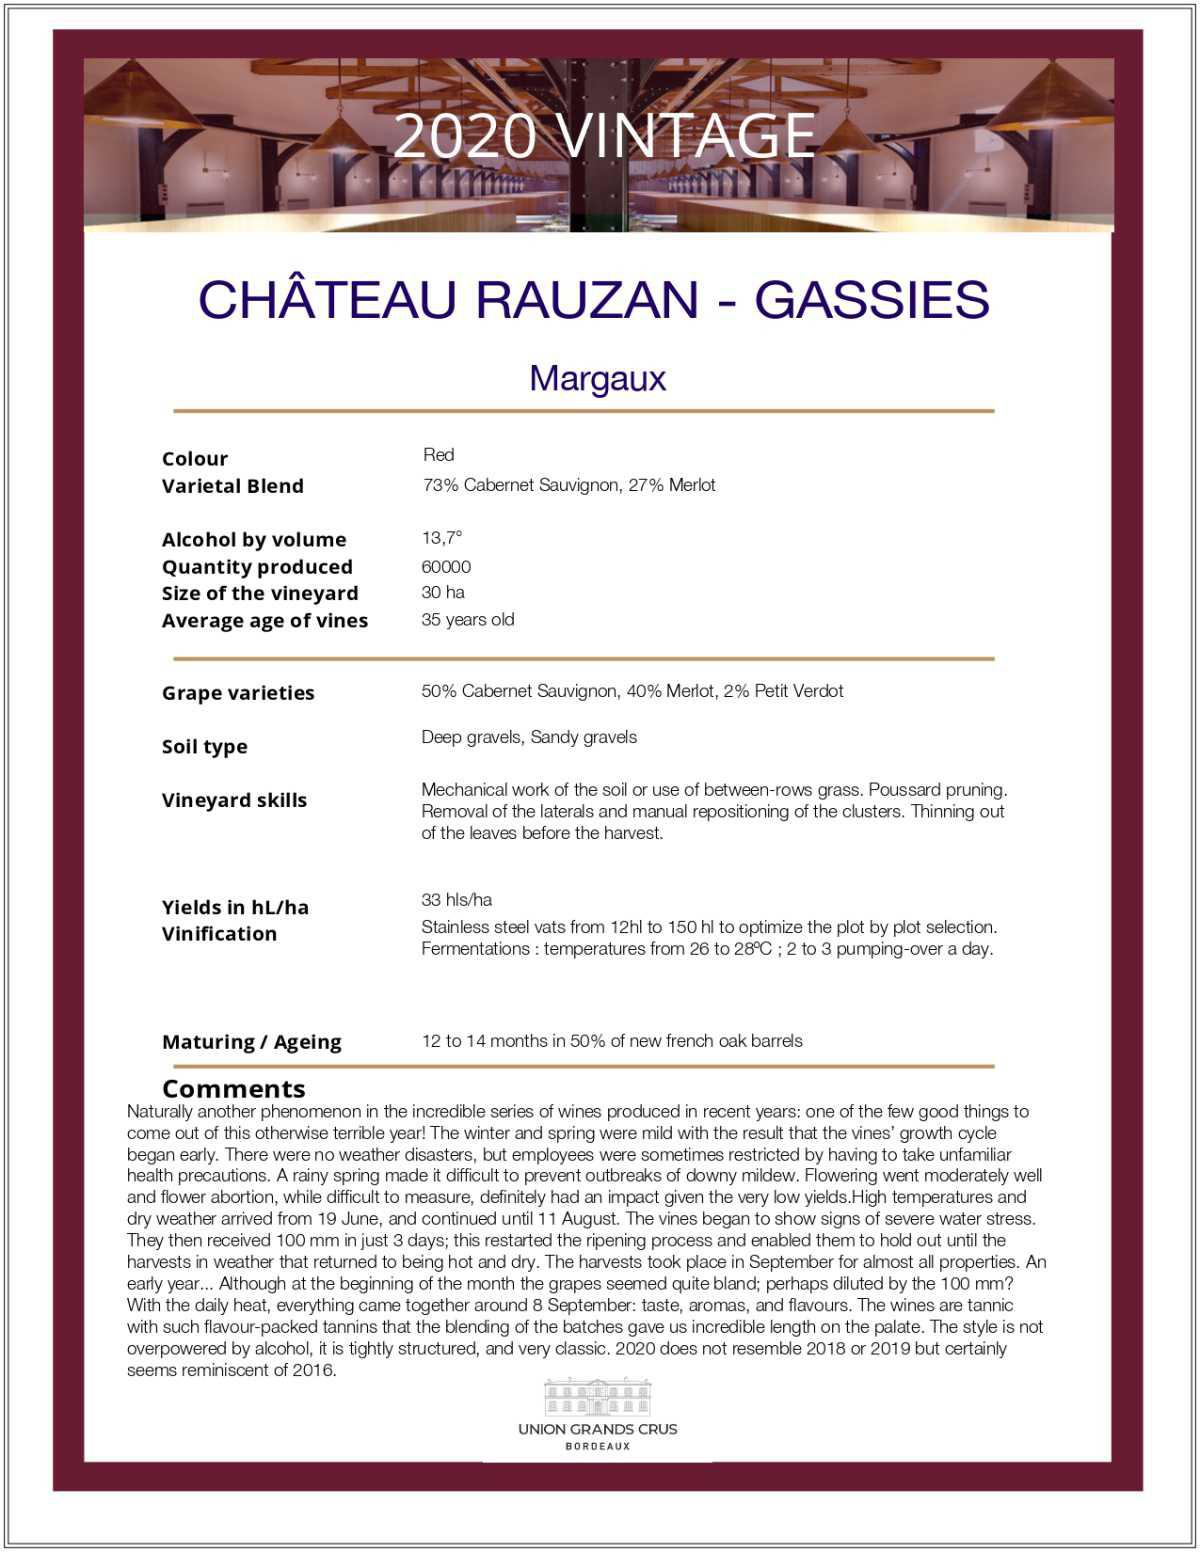 Château Rauzan - Gassies